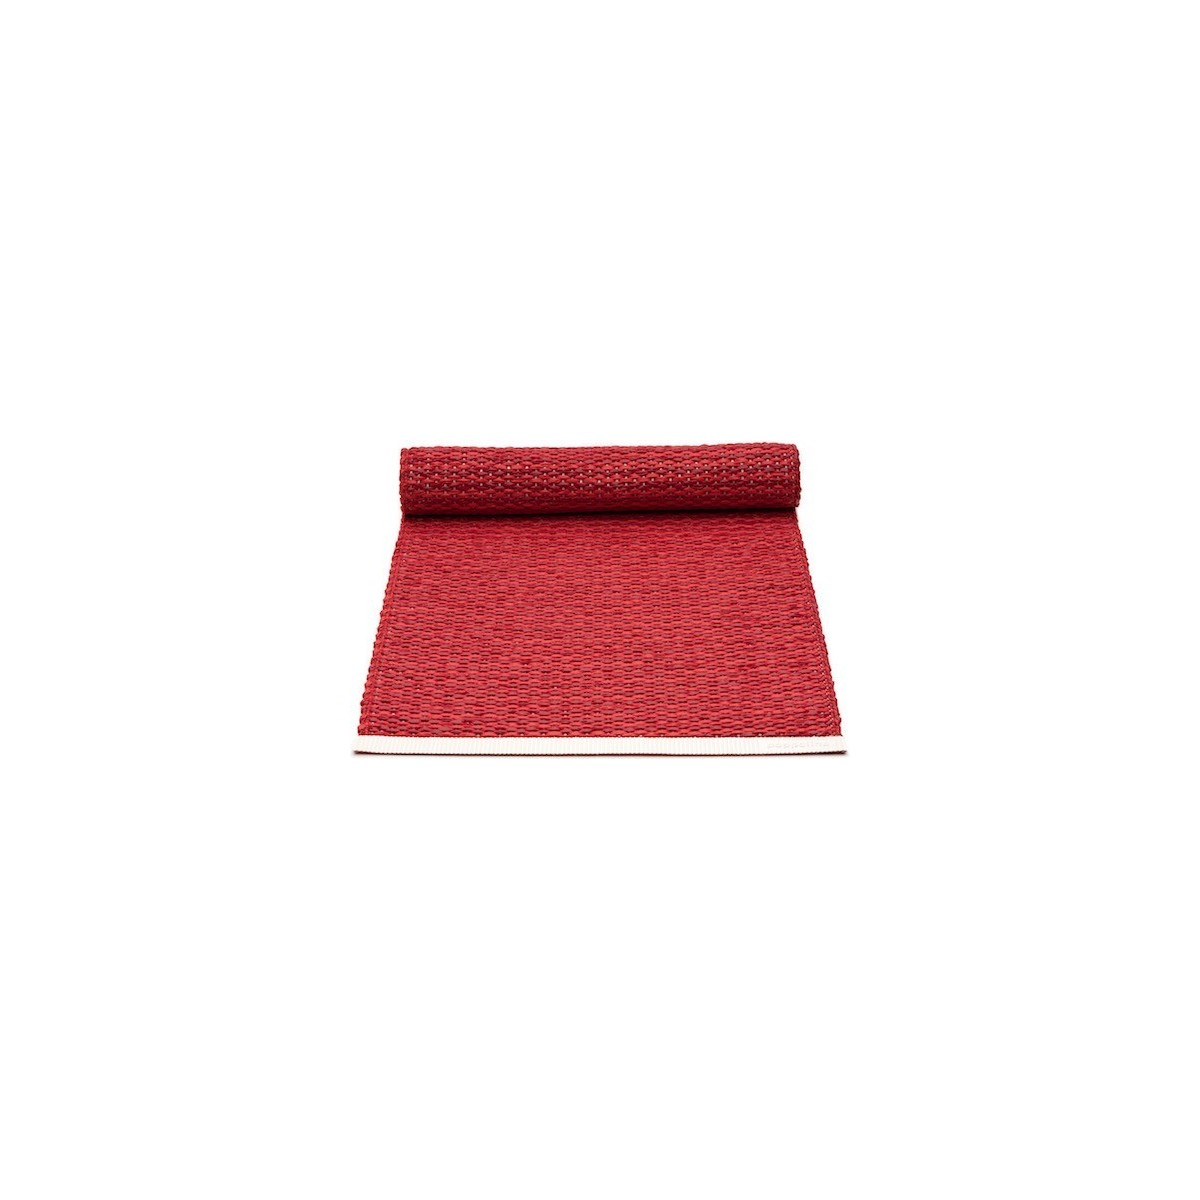 36x150cm - rouge foncé / rouge - chemin de table Mono